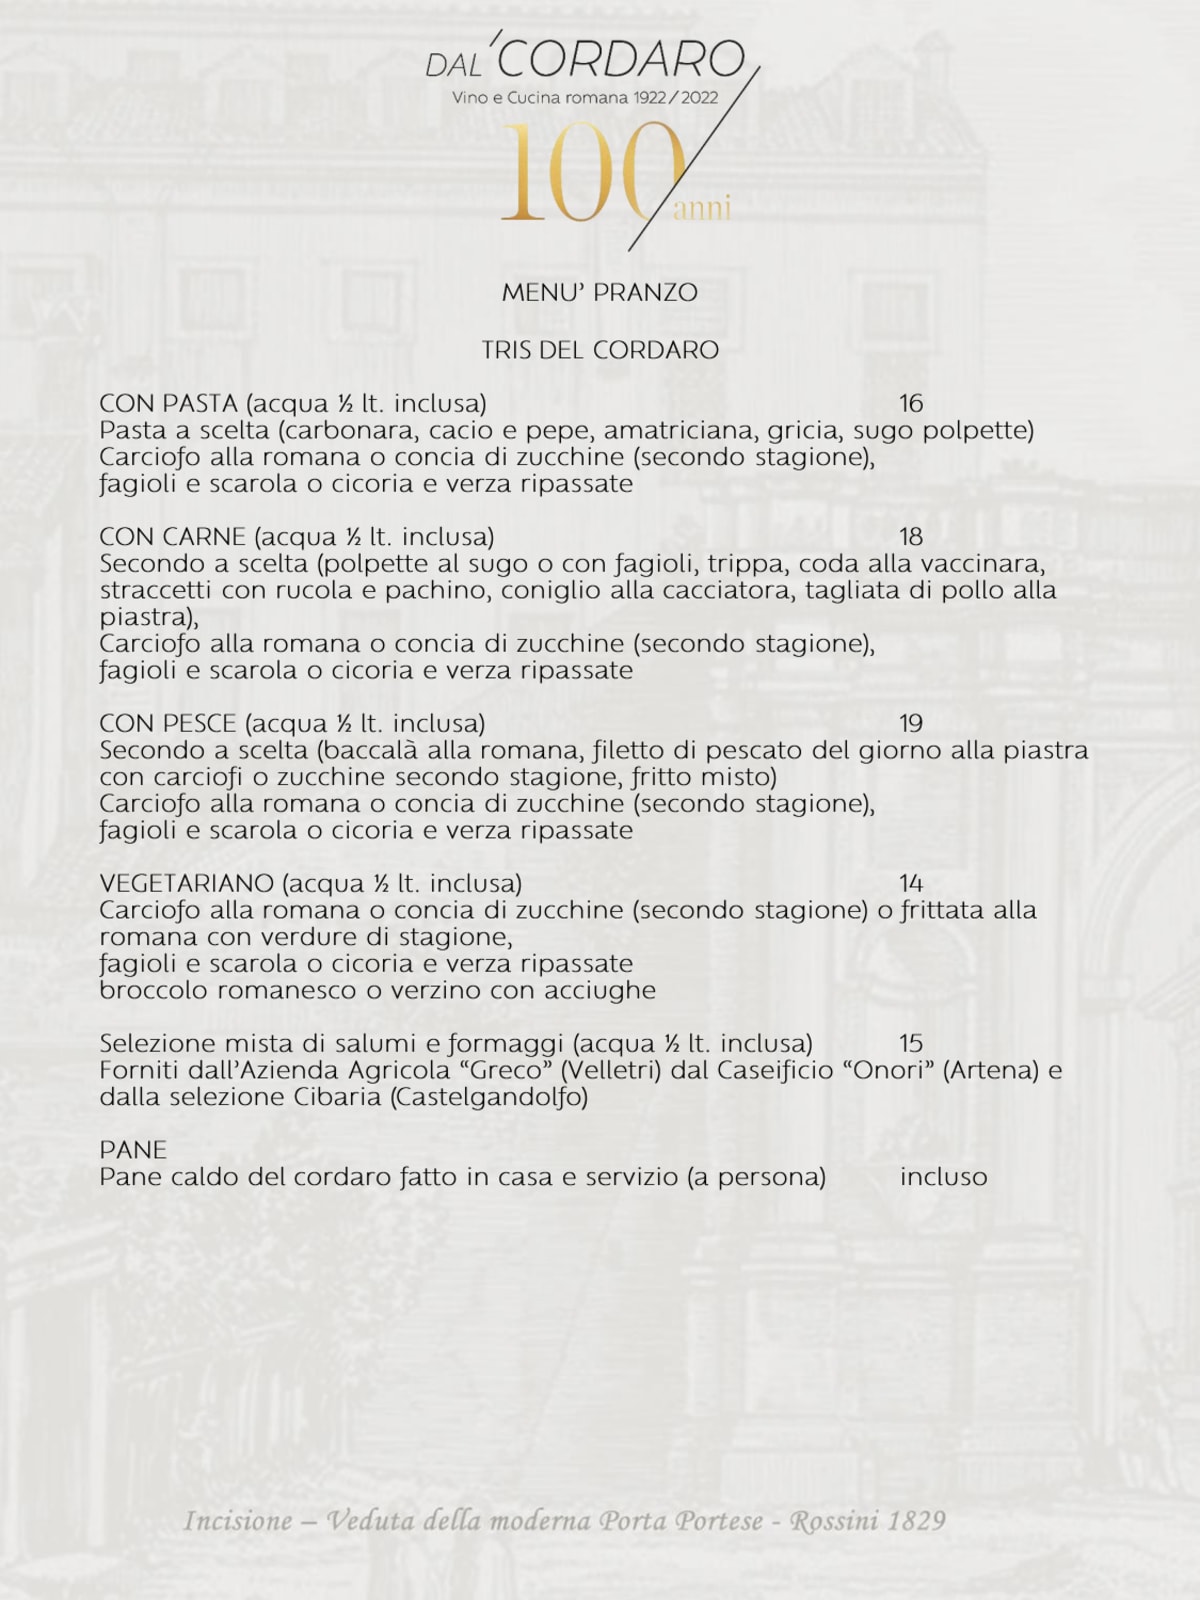 Trattoria Dal Cordaro - Milano menu